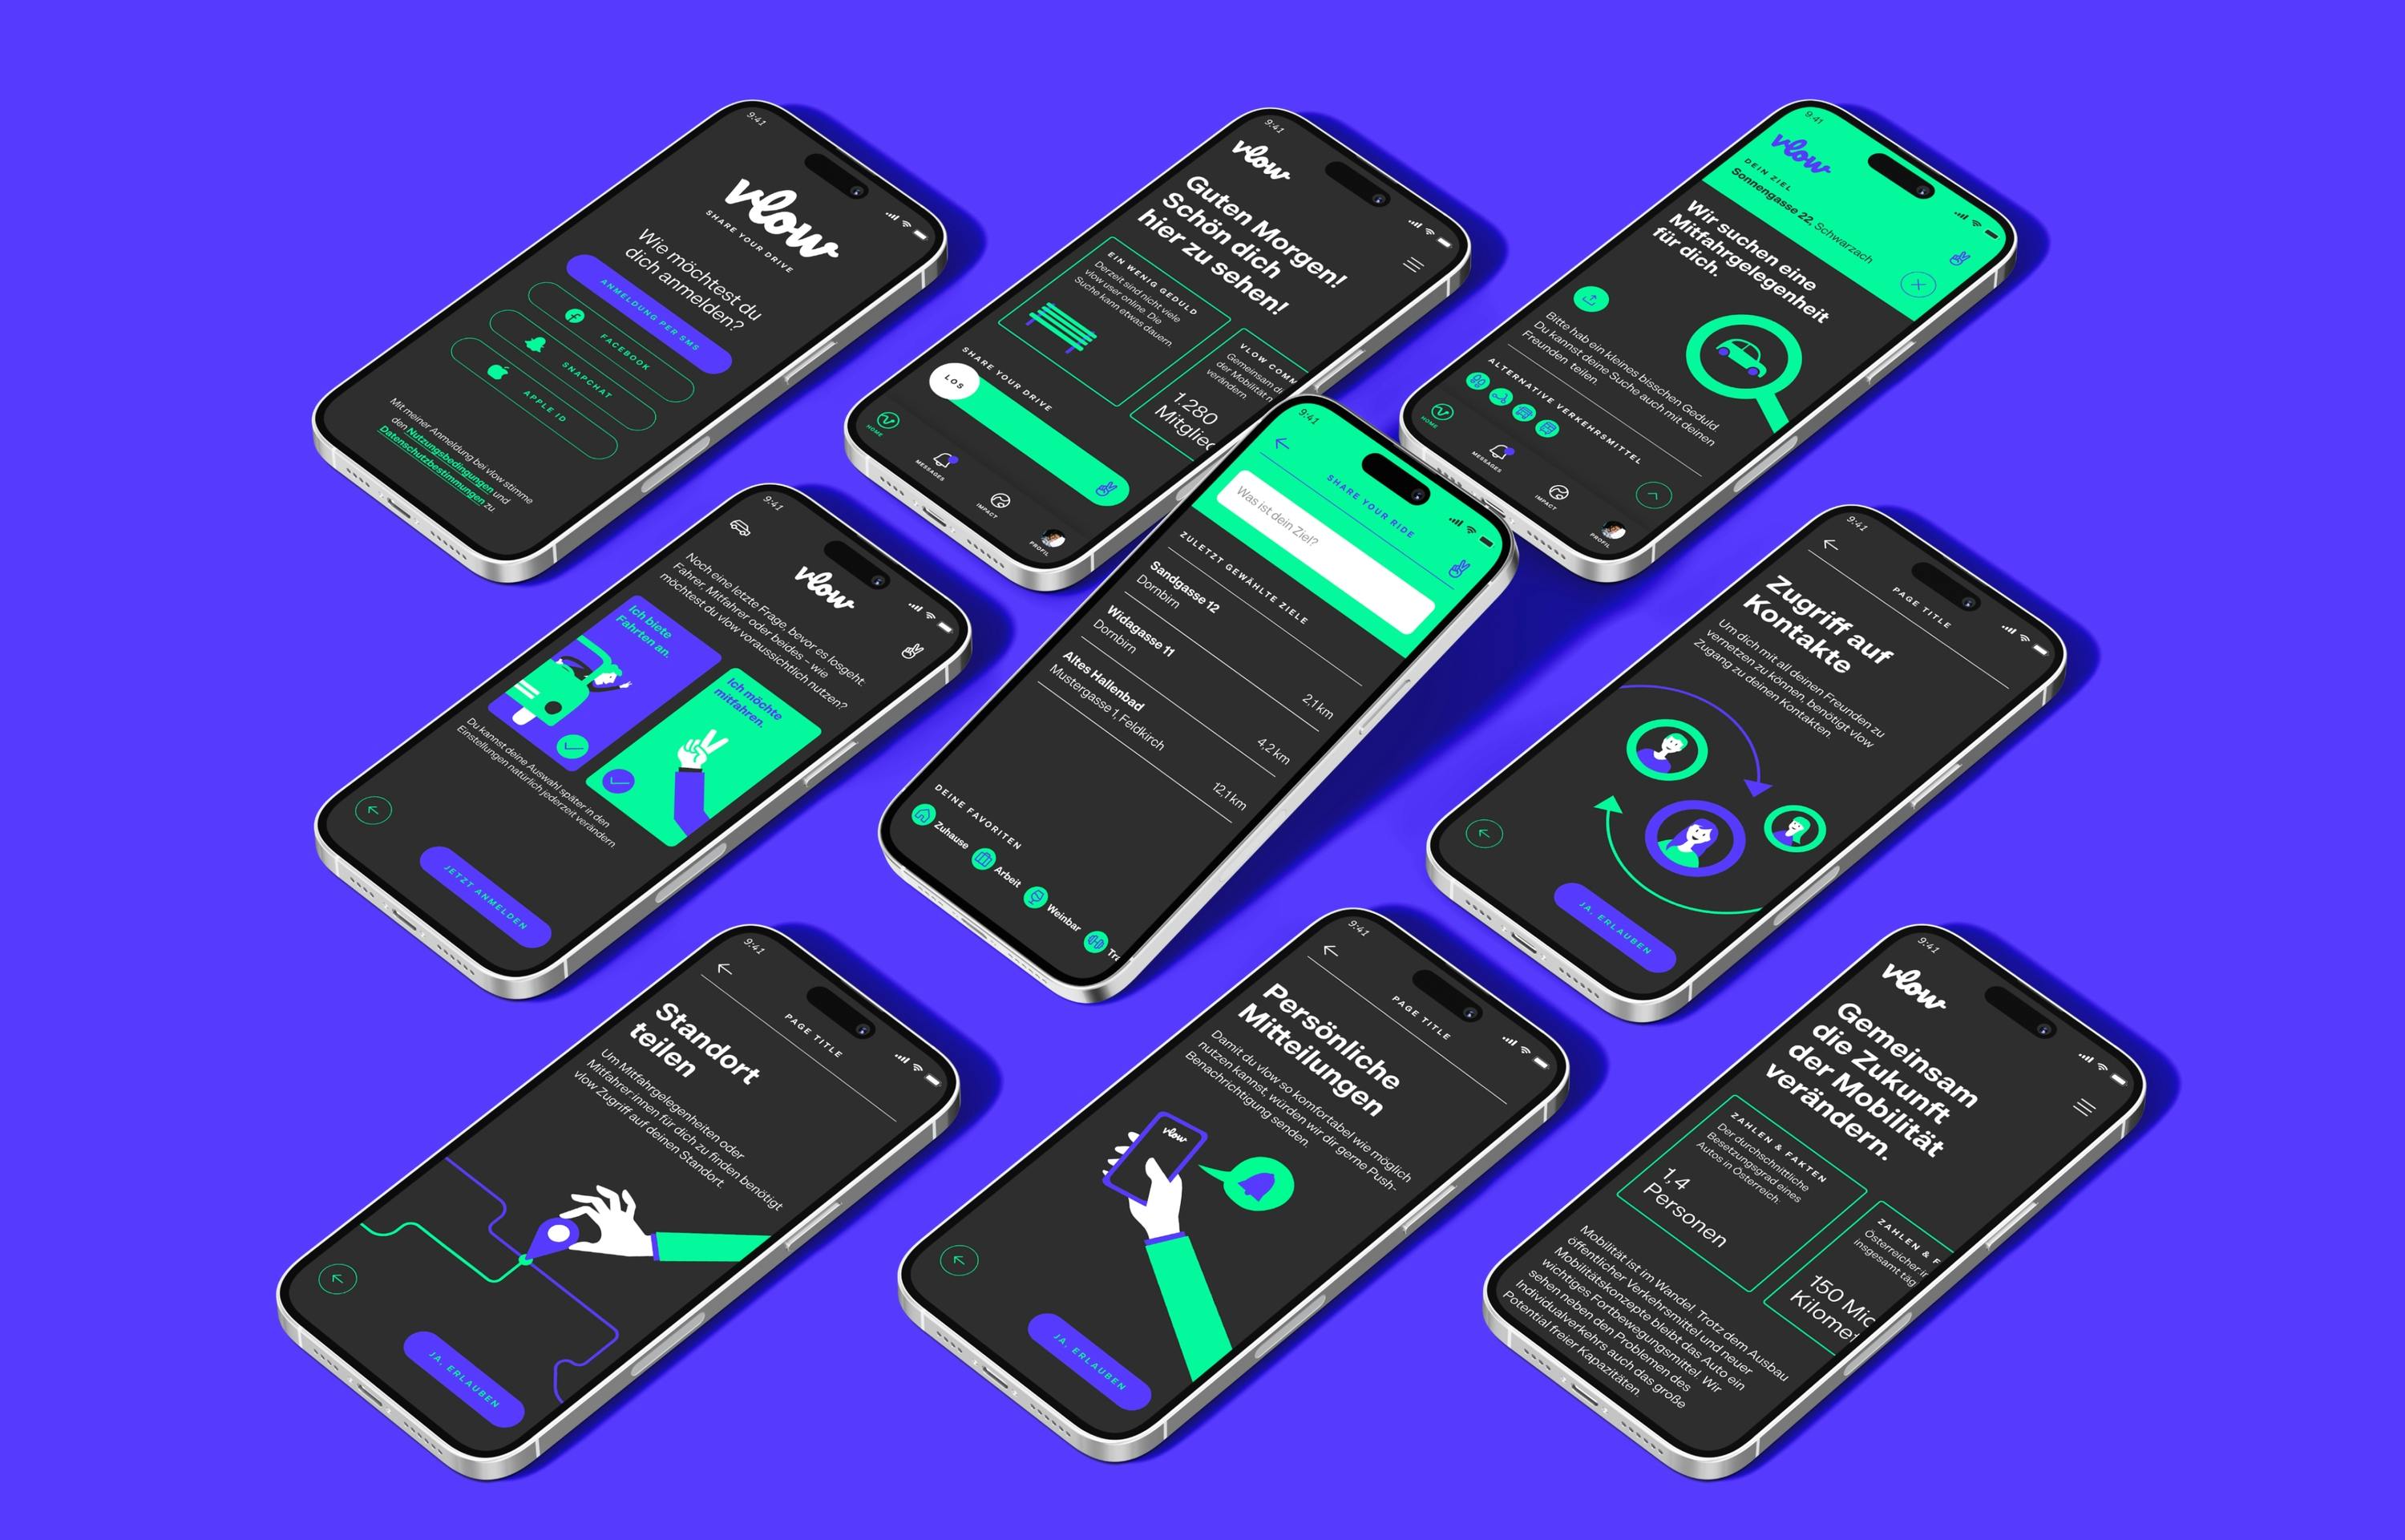 Mehrere Handys liegen auf einer lila Farbfläche und zeigen verschiedene Screens der vlow App © good matters